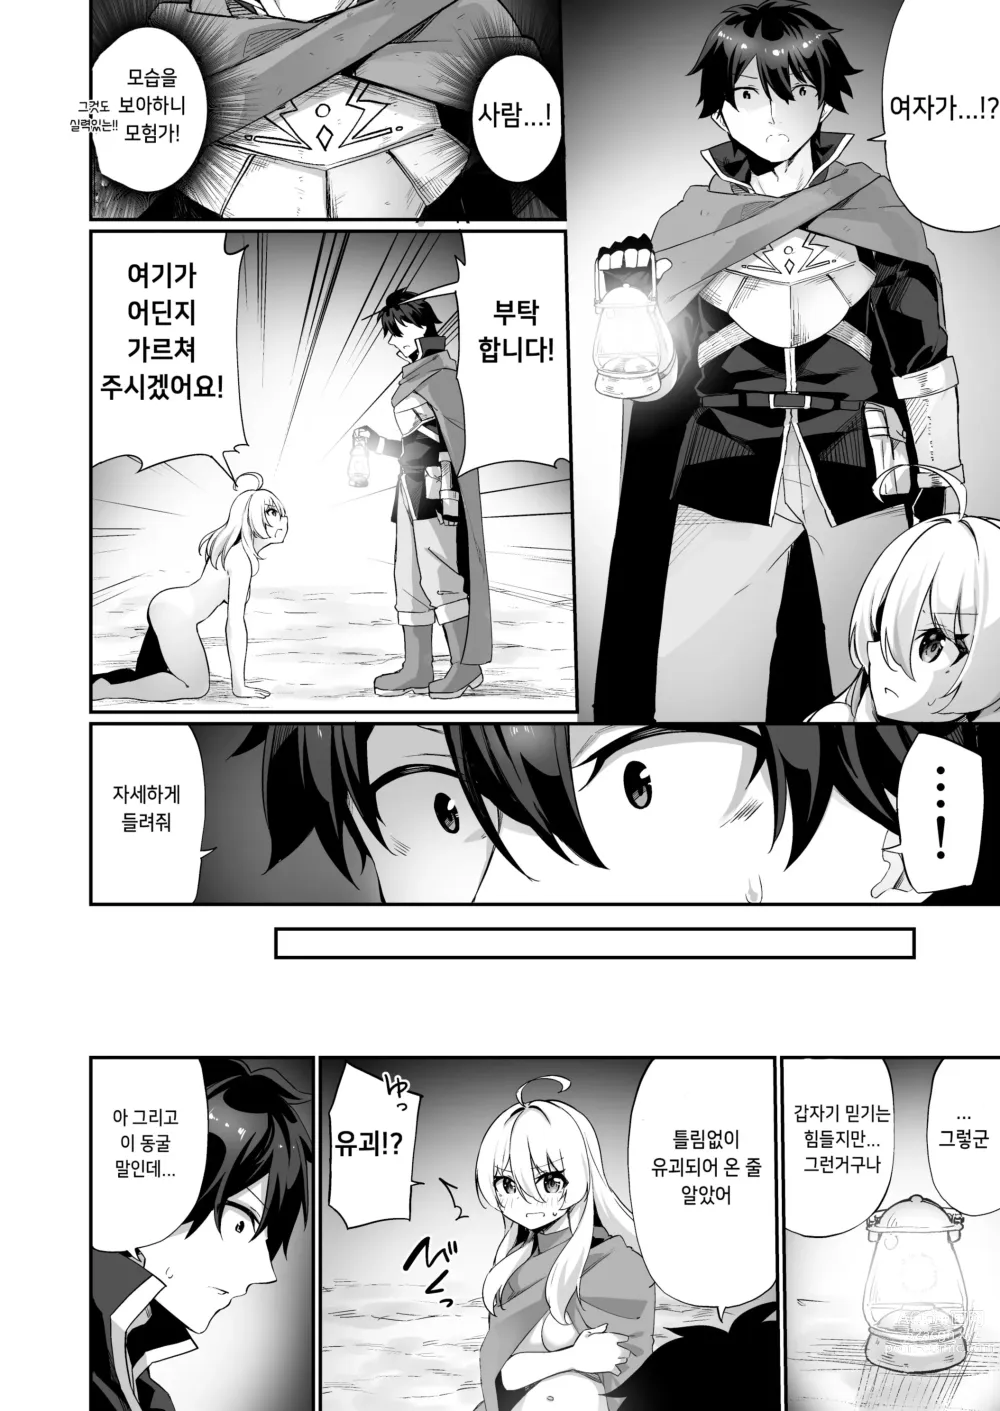 Page 6 of doujinshi 마왕에게 진 용자♂가 서큐버스로 인생을 구가하는 이야기